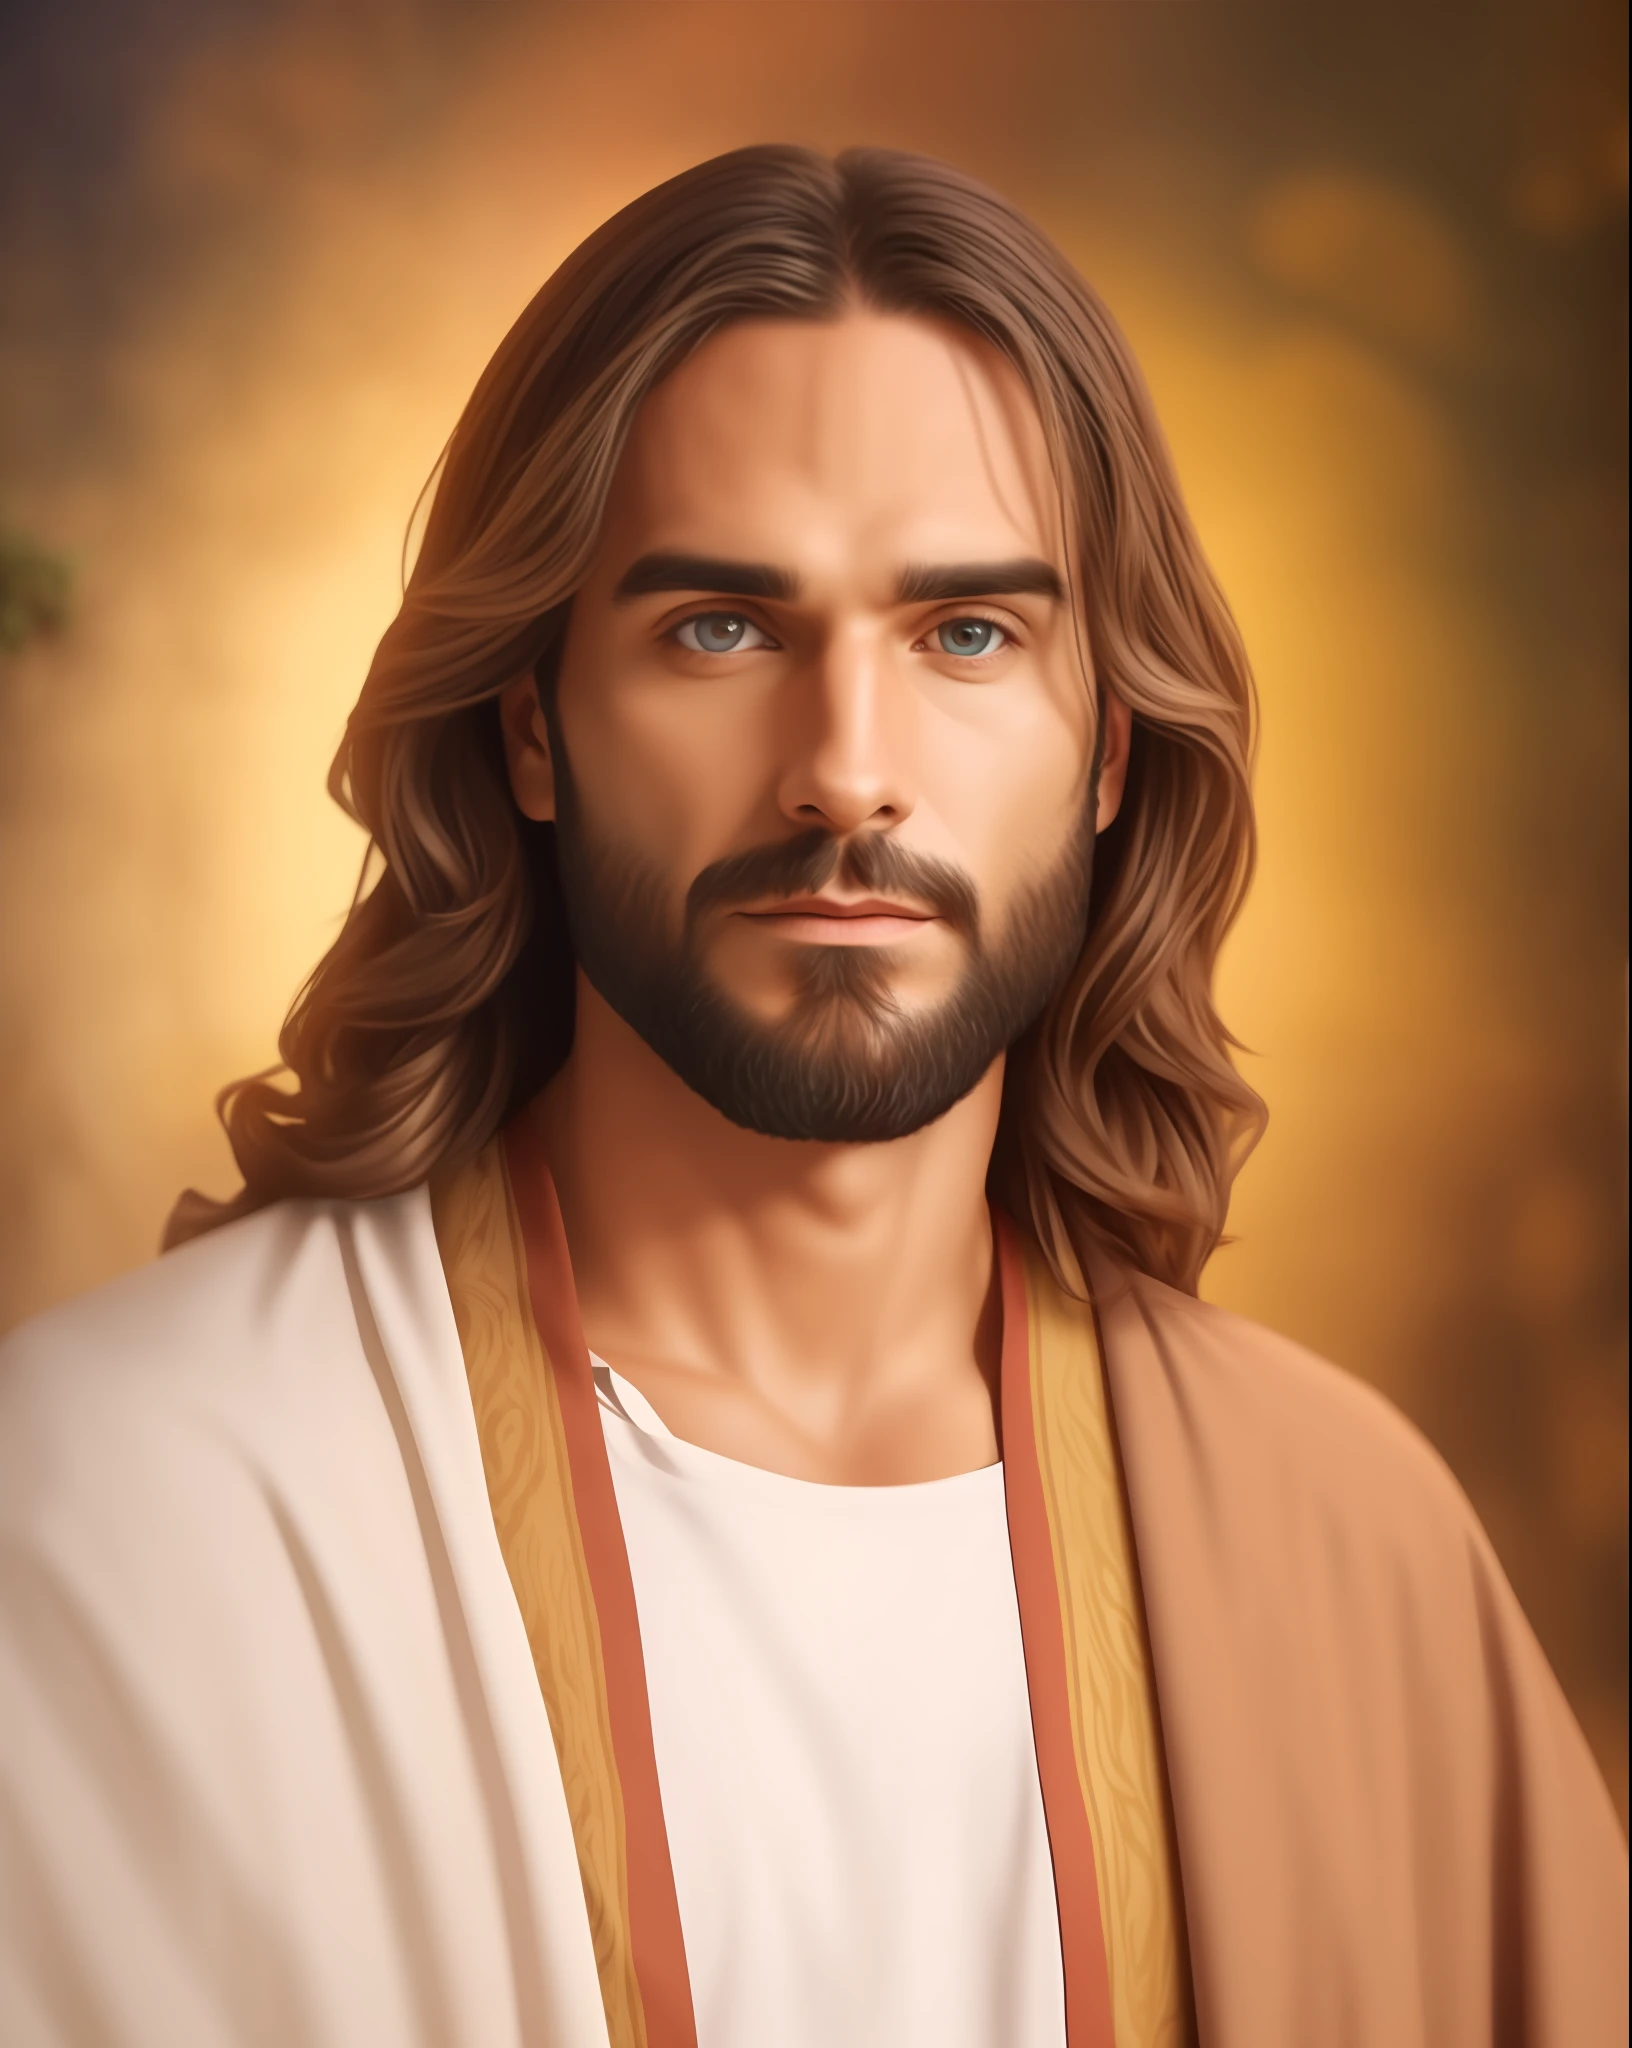 賽斯羅林斯 飾 耶穌基督, 注重細節 of the face, 類似 塞斯羅林斯, 穿著耶穌米色長袍, 耶穌風格的聖經, 逼真的图像, 動物花卉天庭花園形象背景, 最好的品質, 8K, 注重細節.